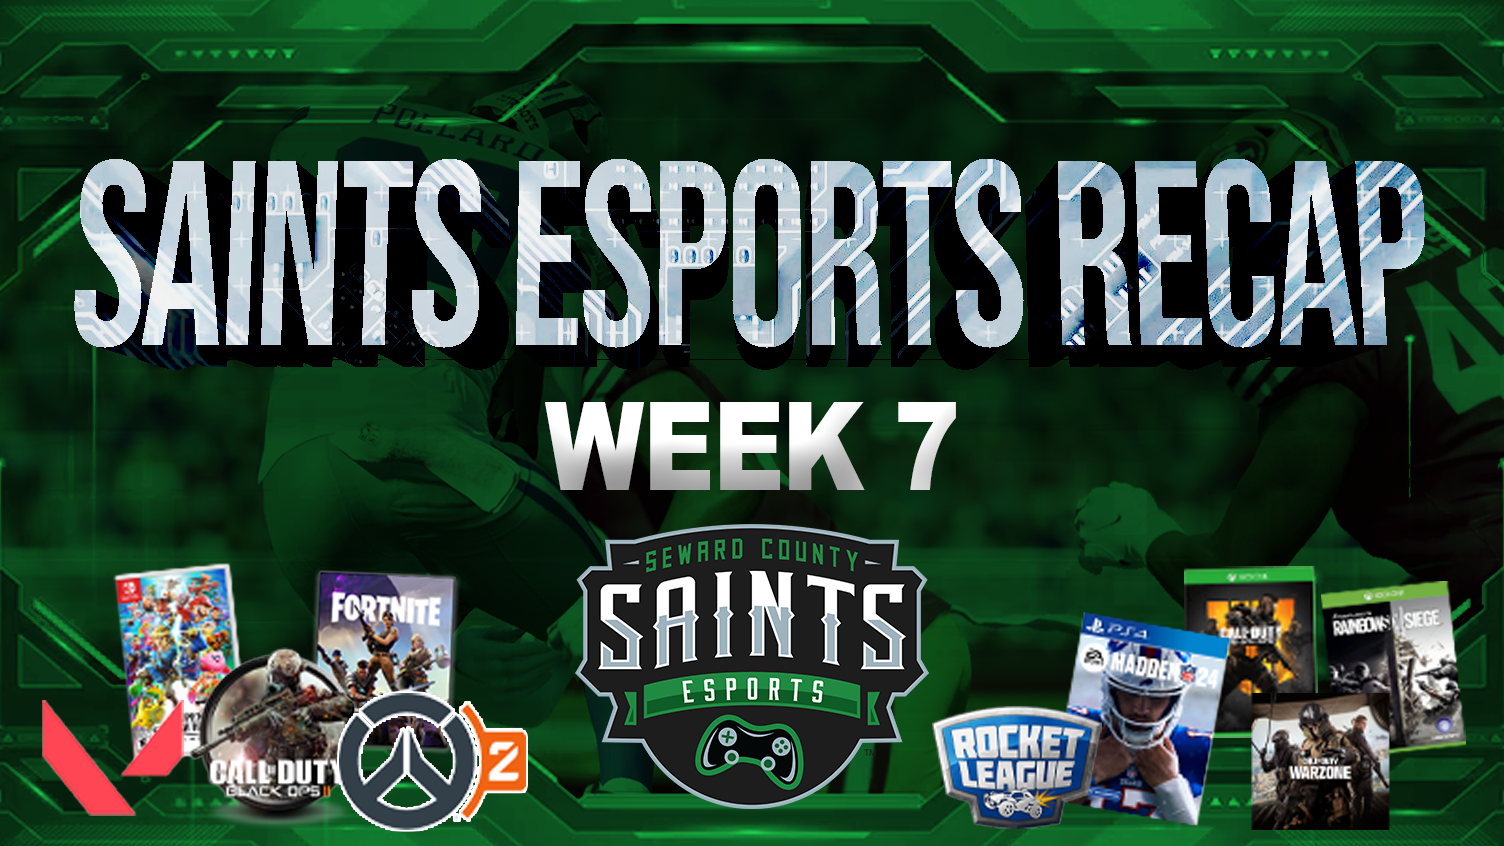 Saints Esports Weekly Recap